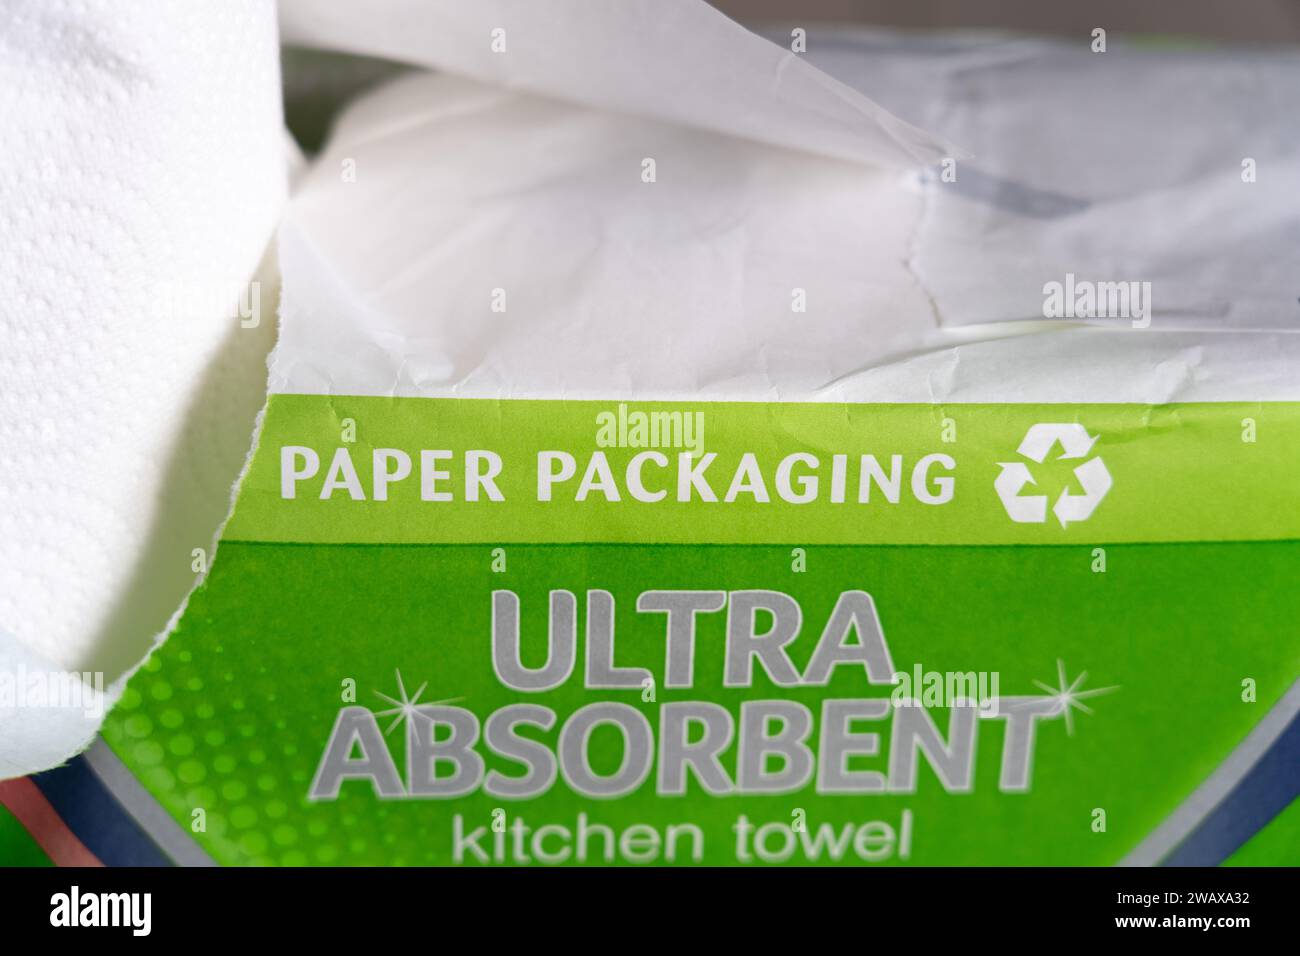 Küchenhandtuchpaket der Eigenmarke Sainsbury mit Papierverpackung und dem Recycling-Symbol, UK. Konzept: Abfallreduzierung, Reduzierung von Kunststoffabfällen Stockfoto